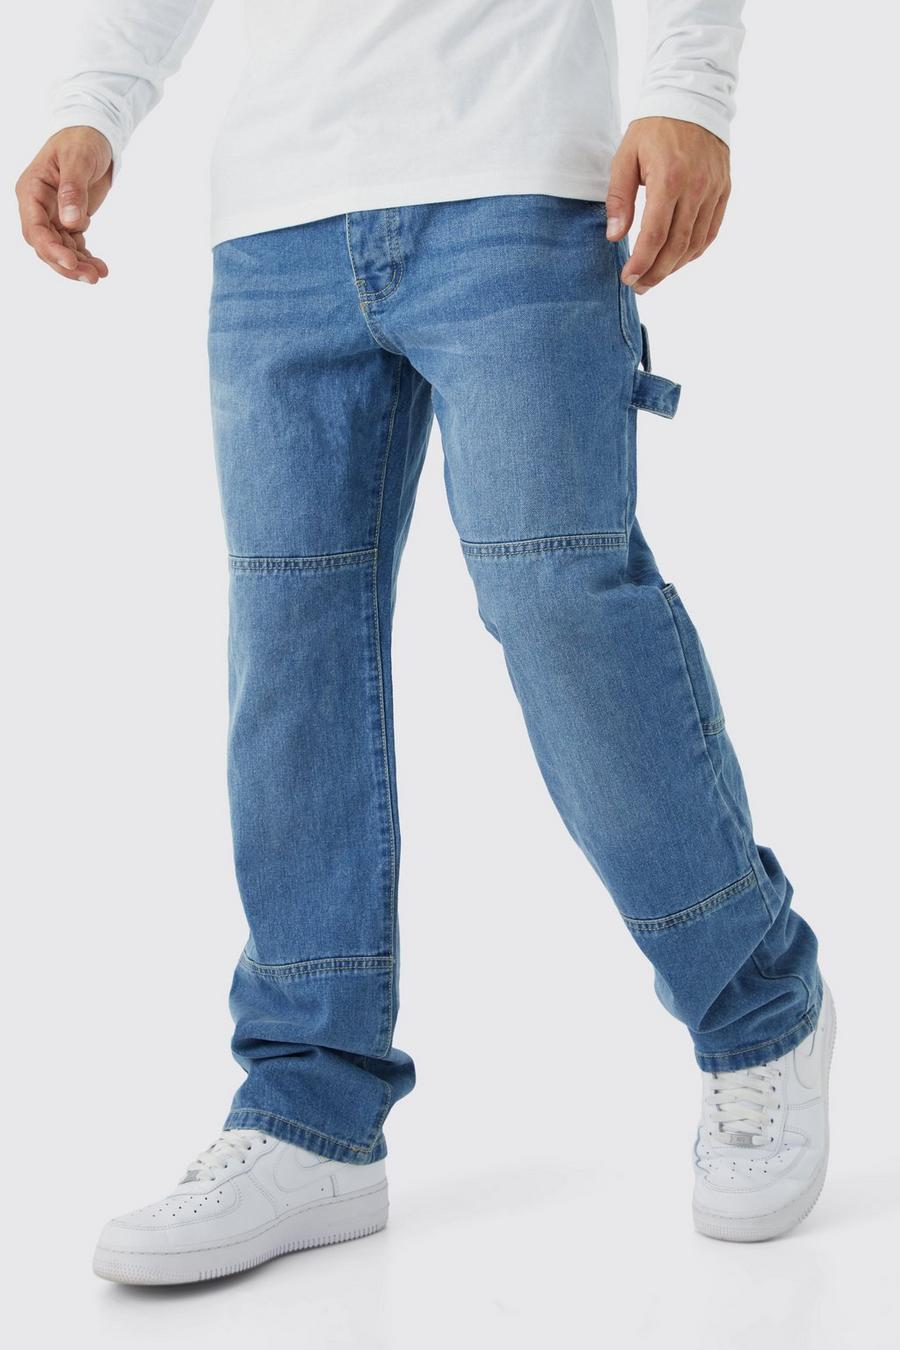 Jeans rilassati stile Carpenter con cavallo basso, Mid blue